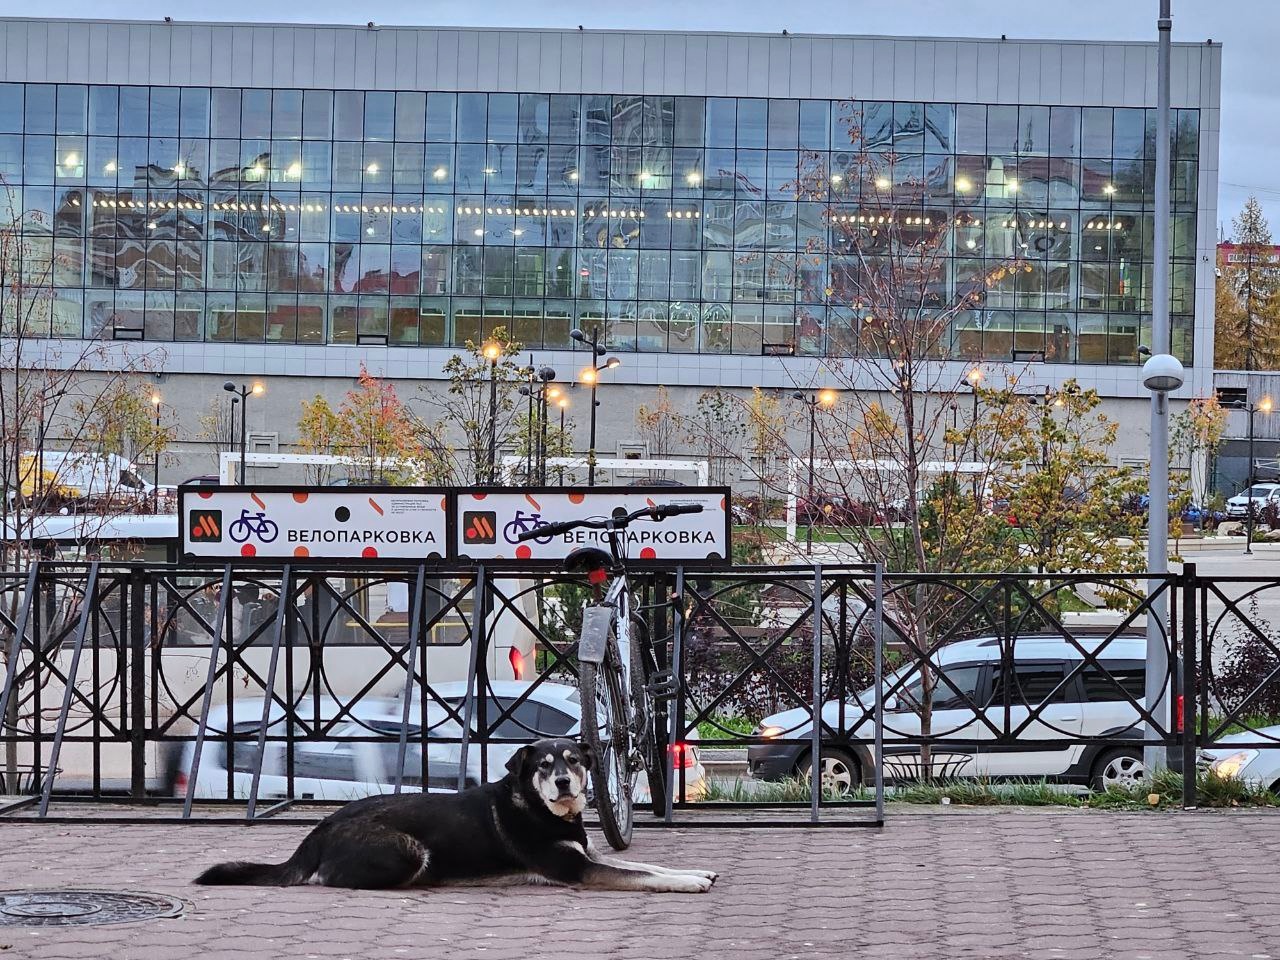 Мэр одного из городов Коми предложил усыплять бездомных собак